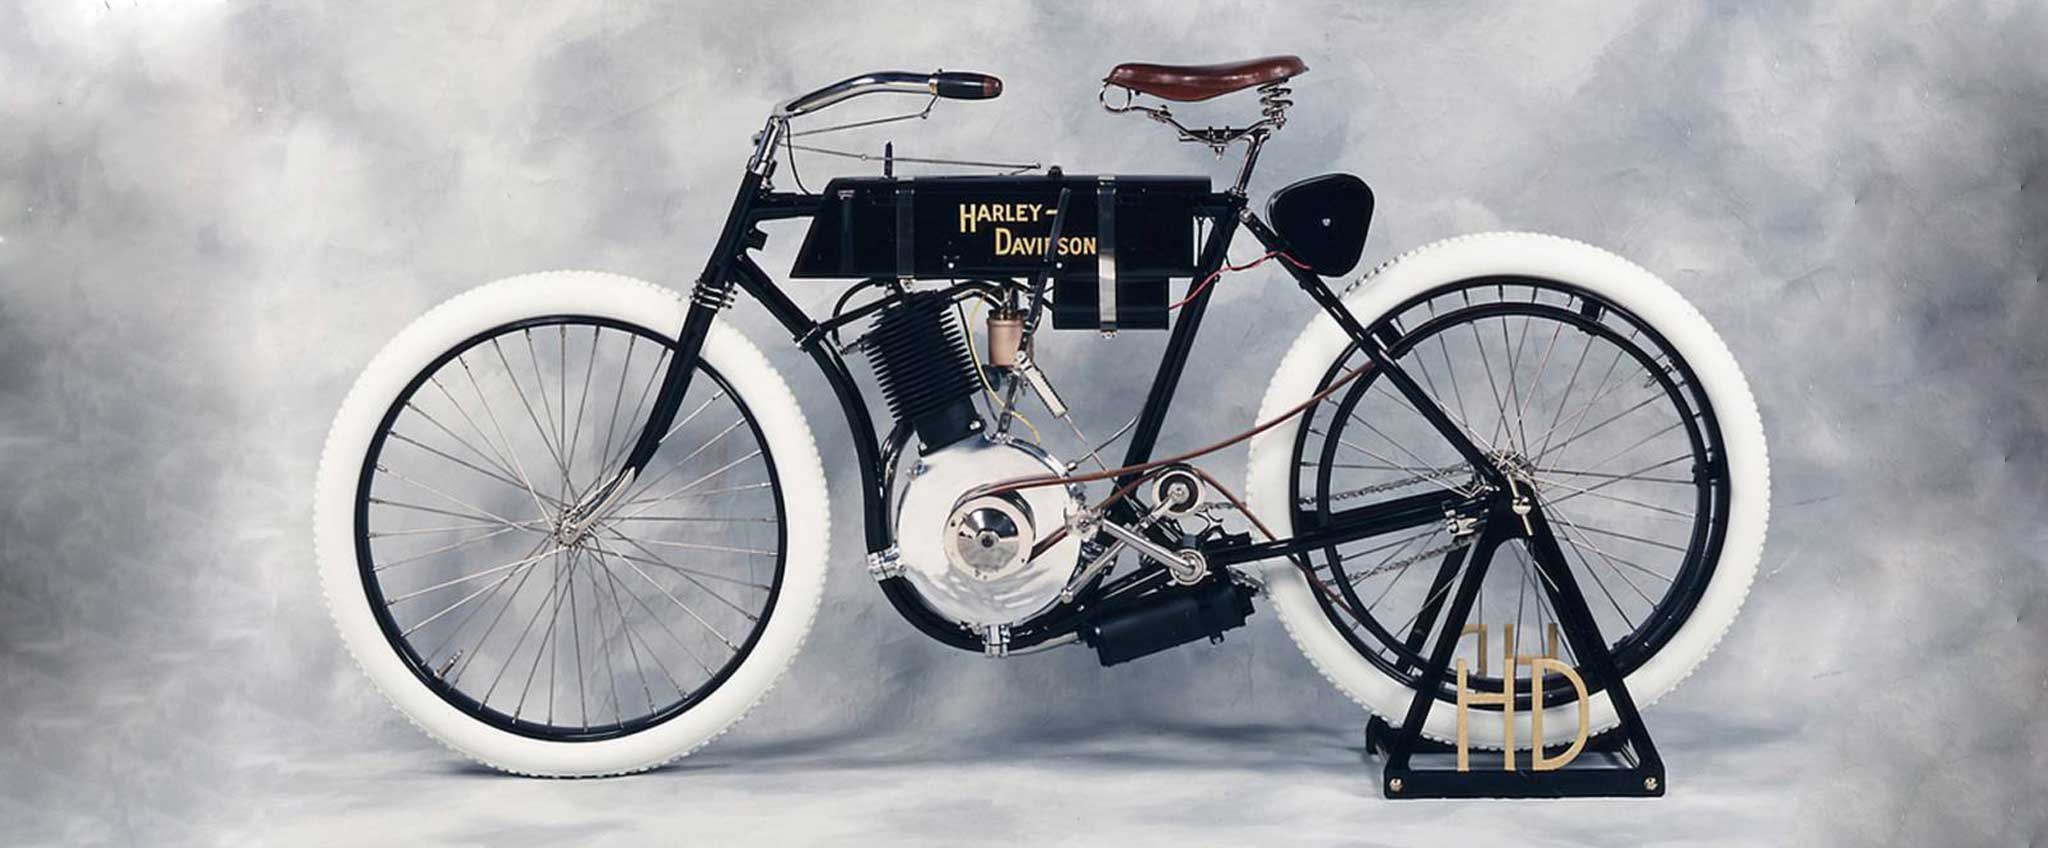 موتور سیکلت هارلی